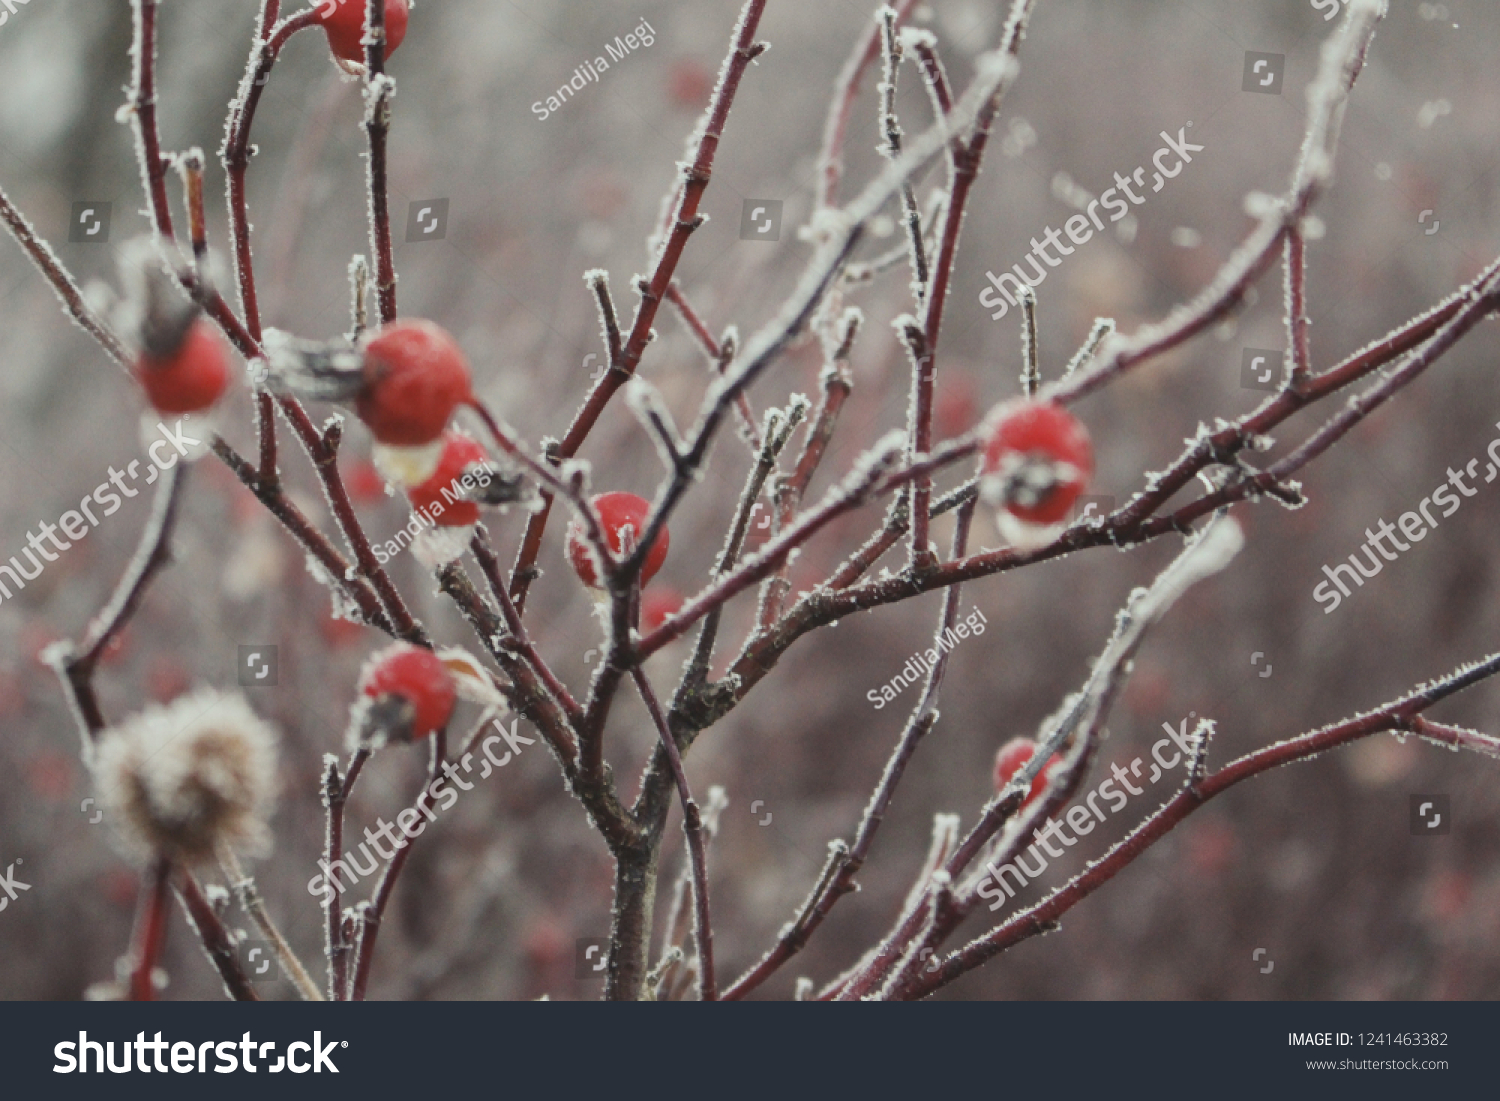 Frozen berries in winter #1241463382